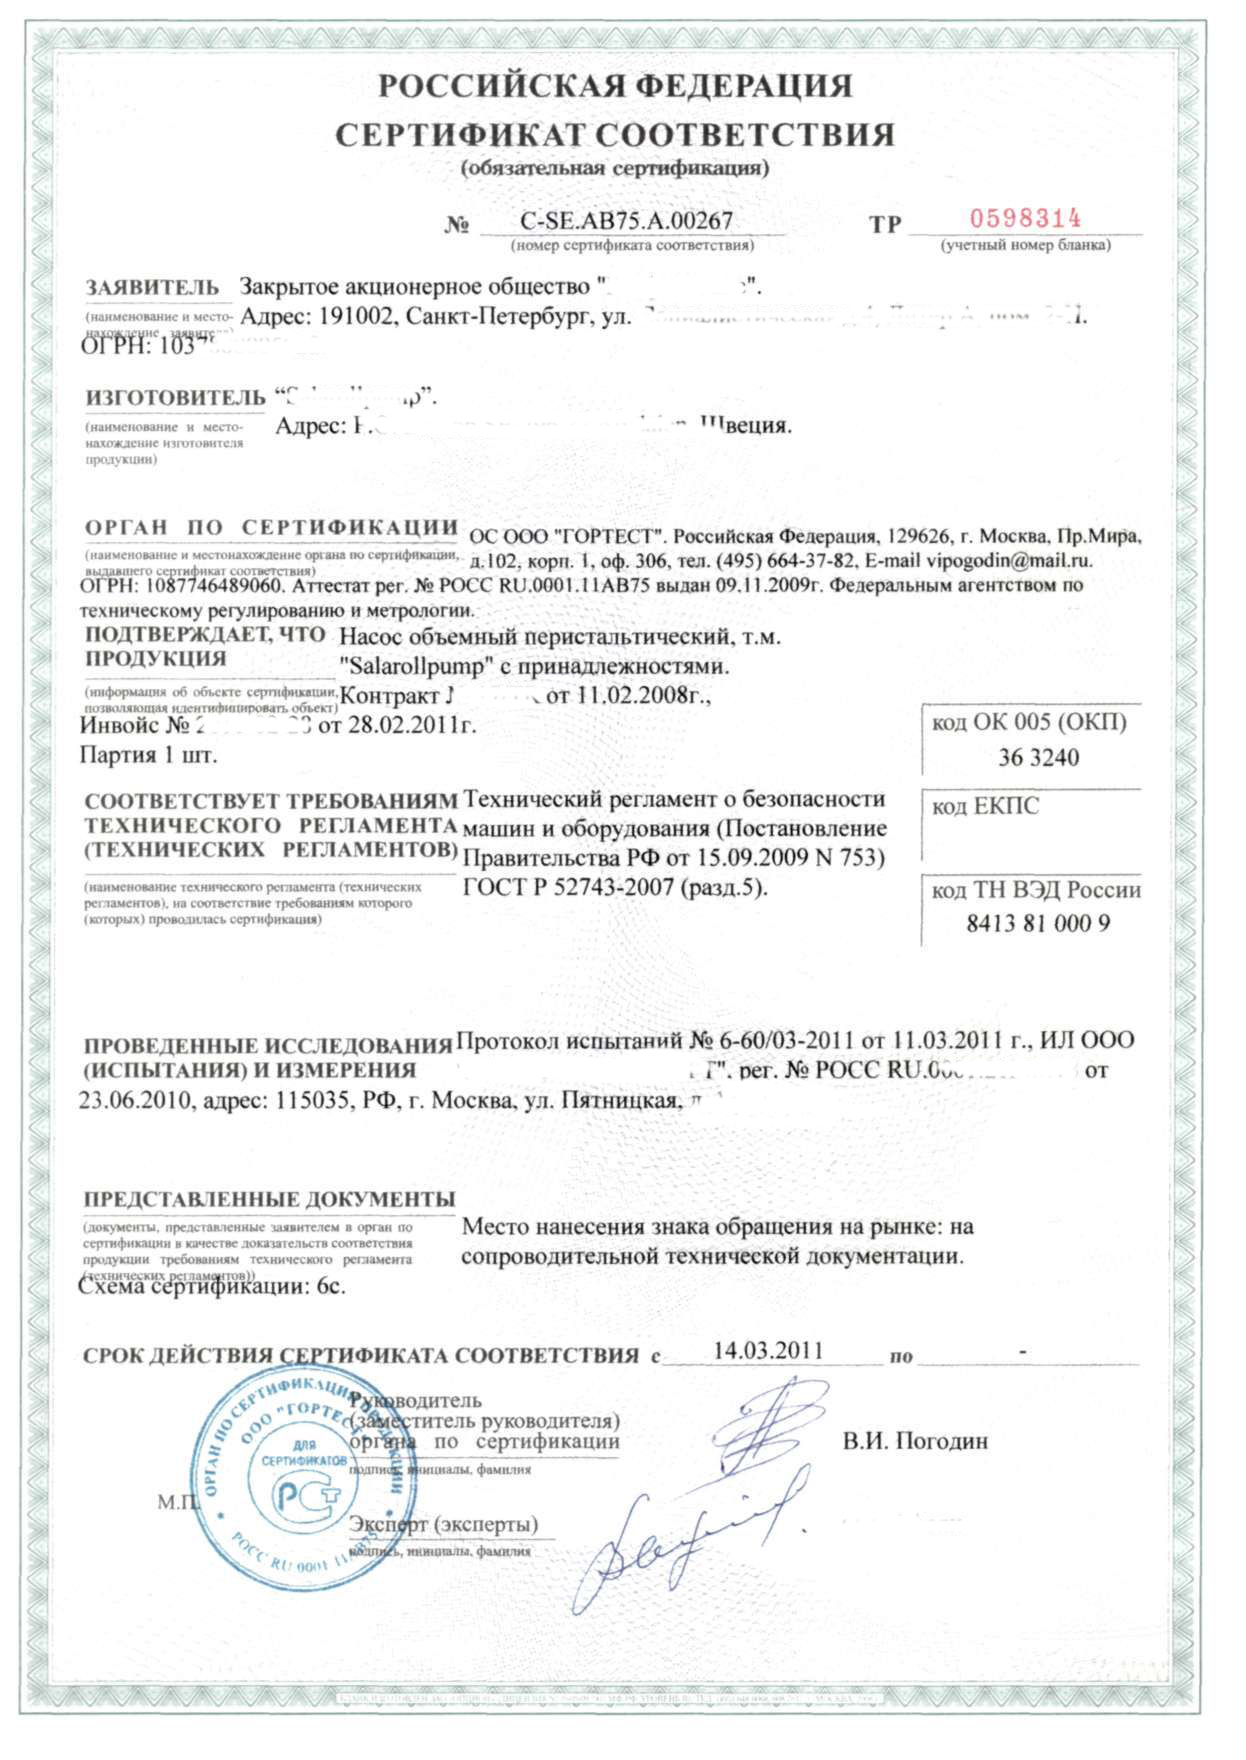 Образец Сертификата соответствия по 44-ФЗ, 223-ФЗ (обязательная сертификация)